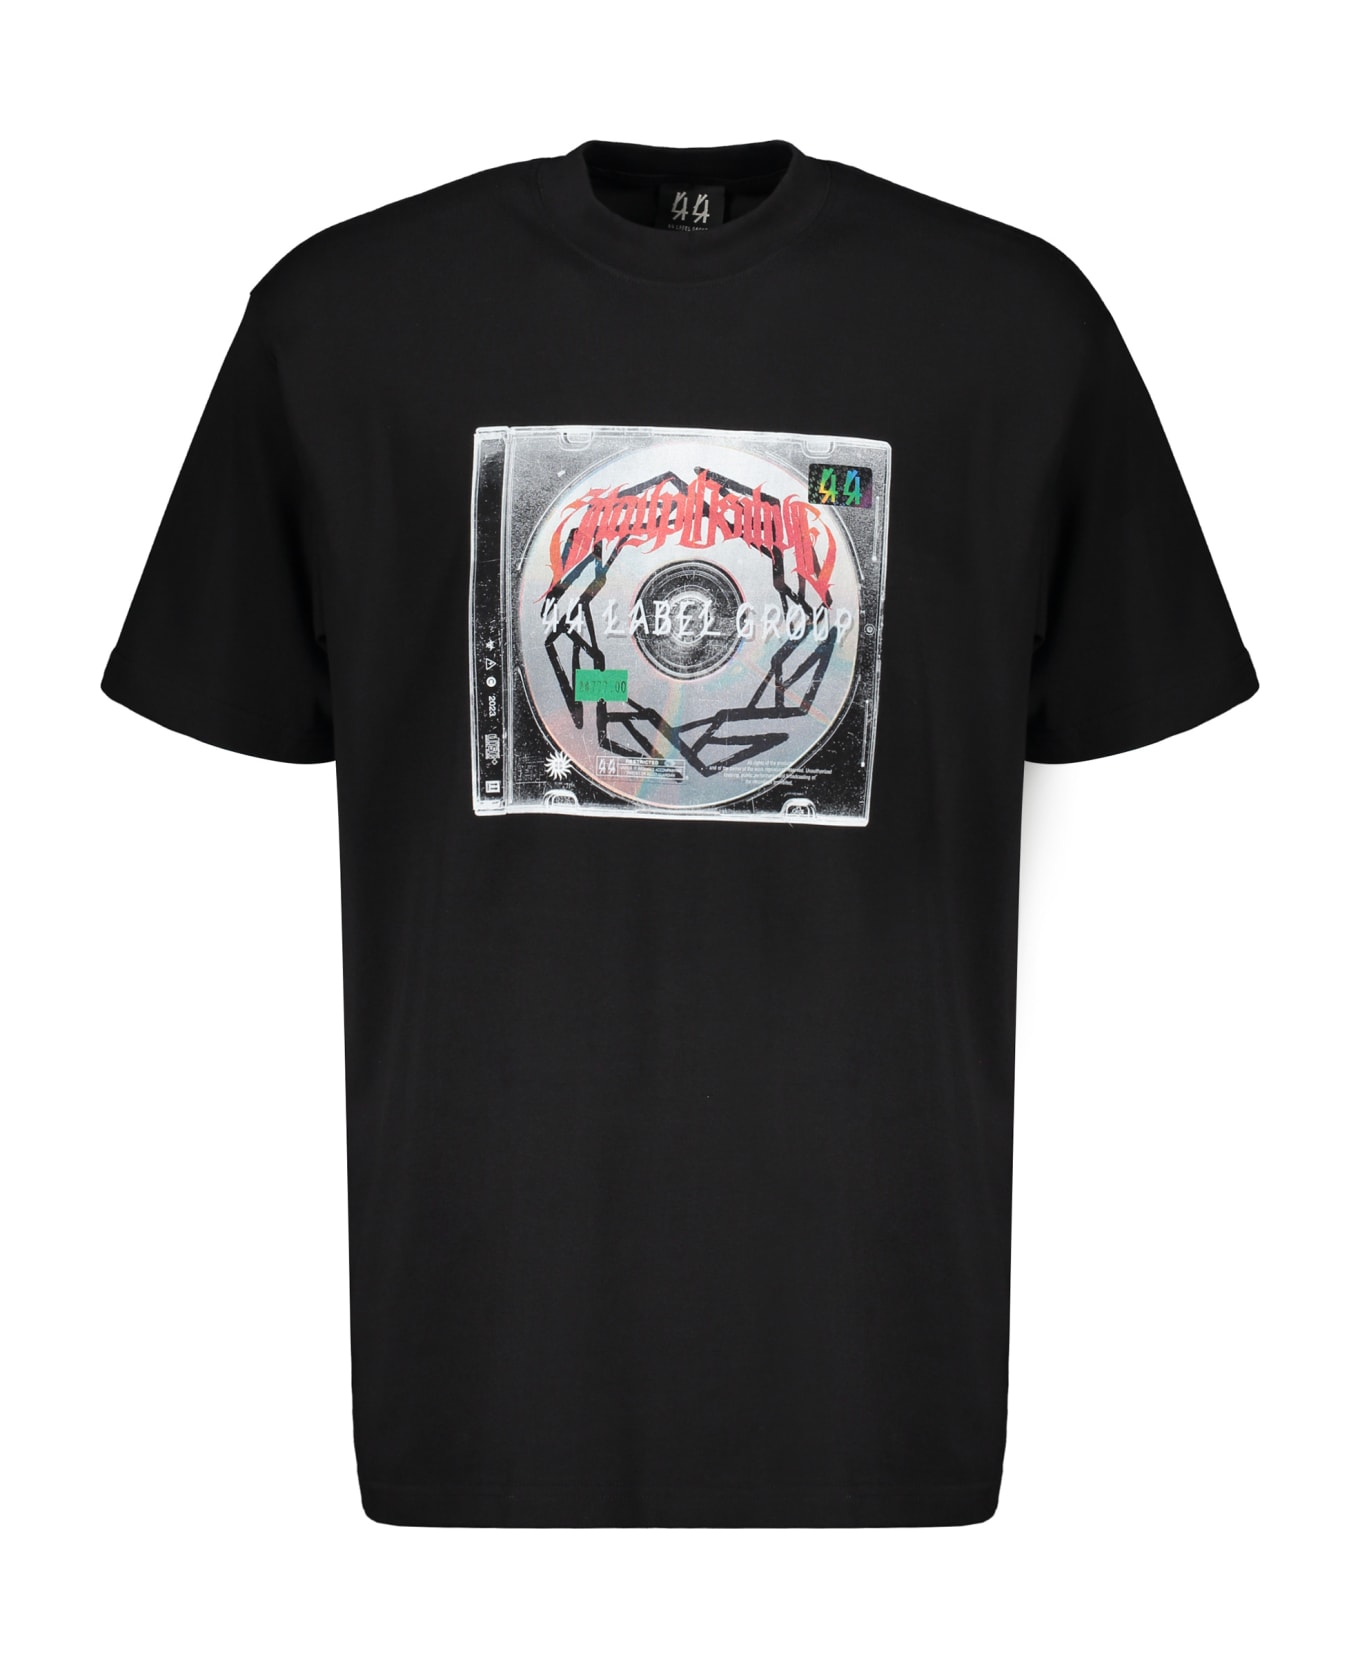 44 Label Group Cotton T-shirt - black